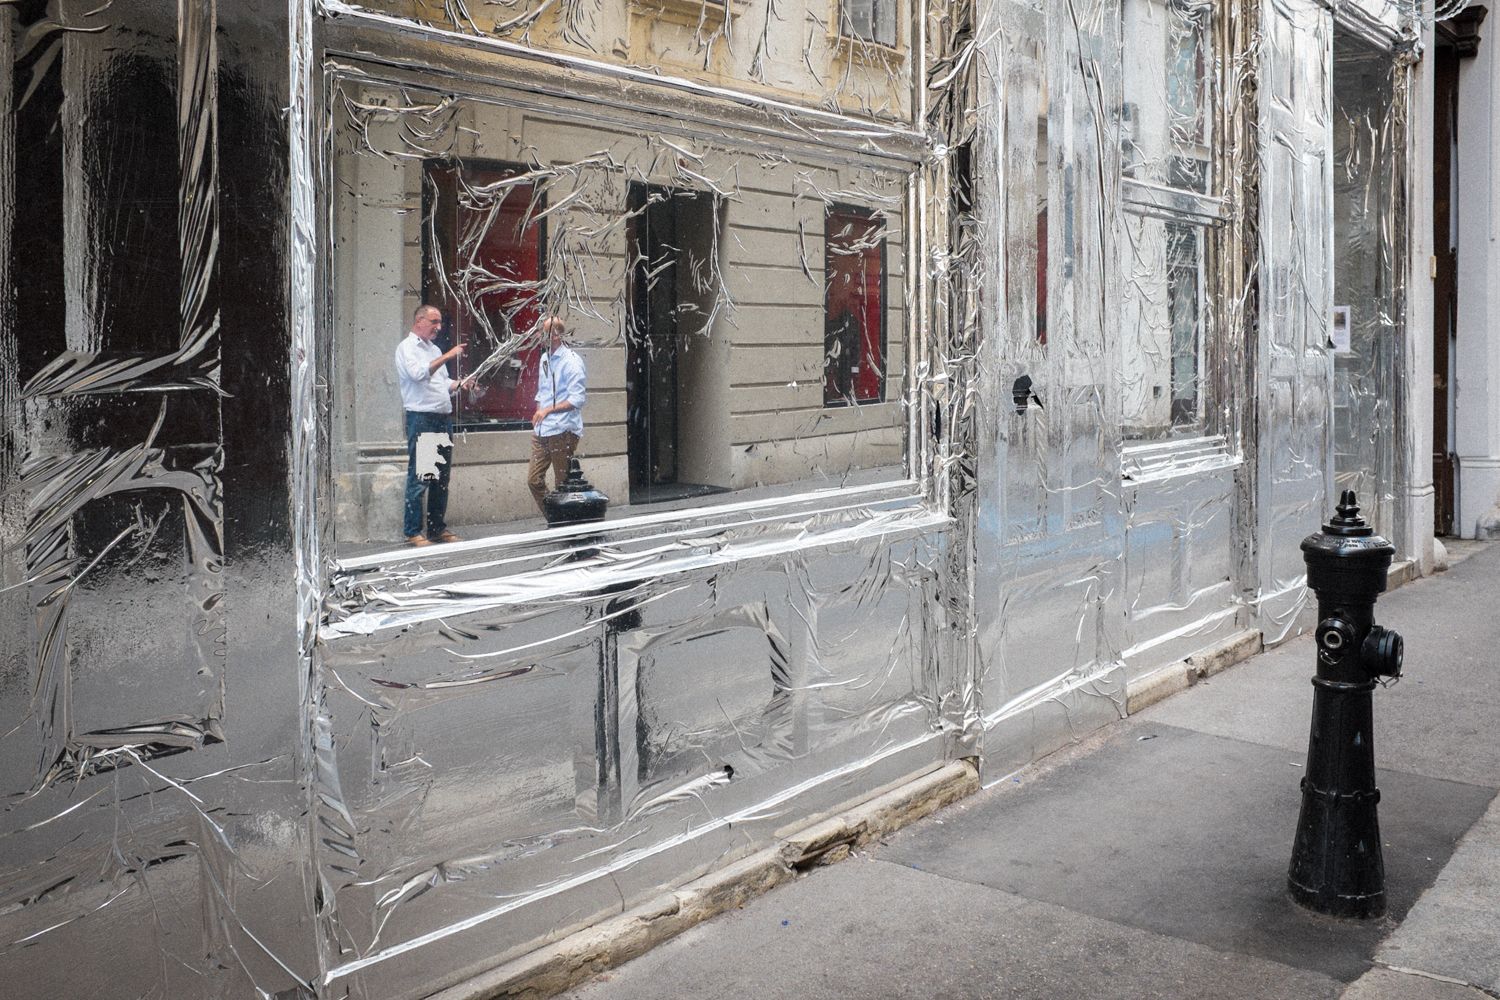 Die Fassade eines Geschäfts ist mit Silberfolie verkleidet. In der Folie spiegelt sich eine Wiener Straßenszene mit zwei sich unterhaltenden Männern auf dem Gehweg.